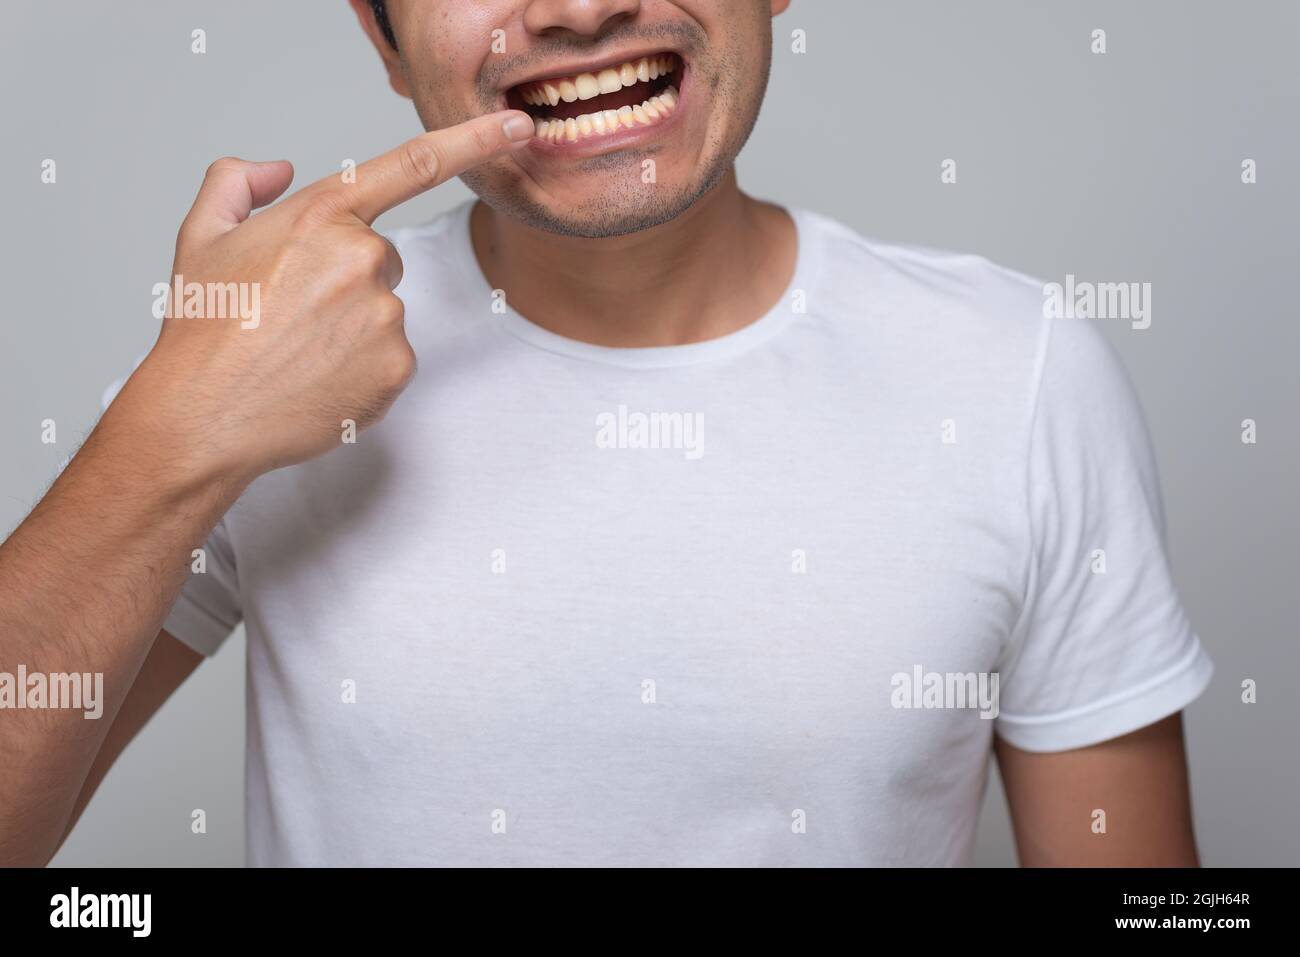 Homme mexicain à l'apparence hispanique avec des dents jaunes, jeune homme à cheveux chinois en chemise blanche avec arrière-plan gris, pointe son doigt vers sa bouche Banque D'Images